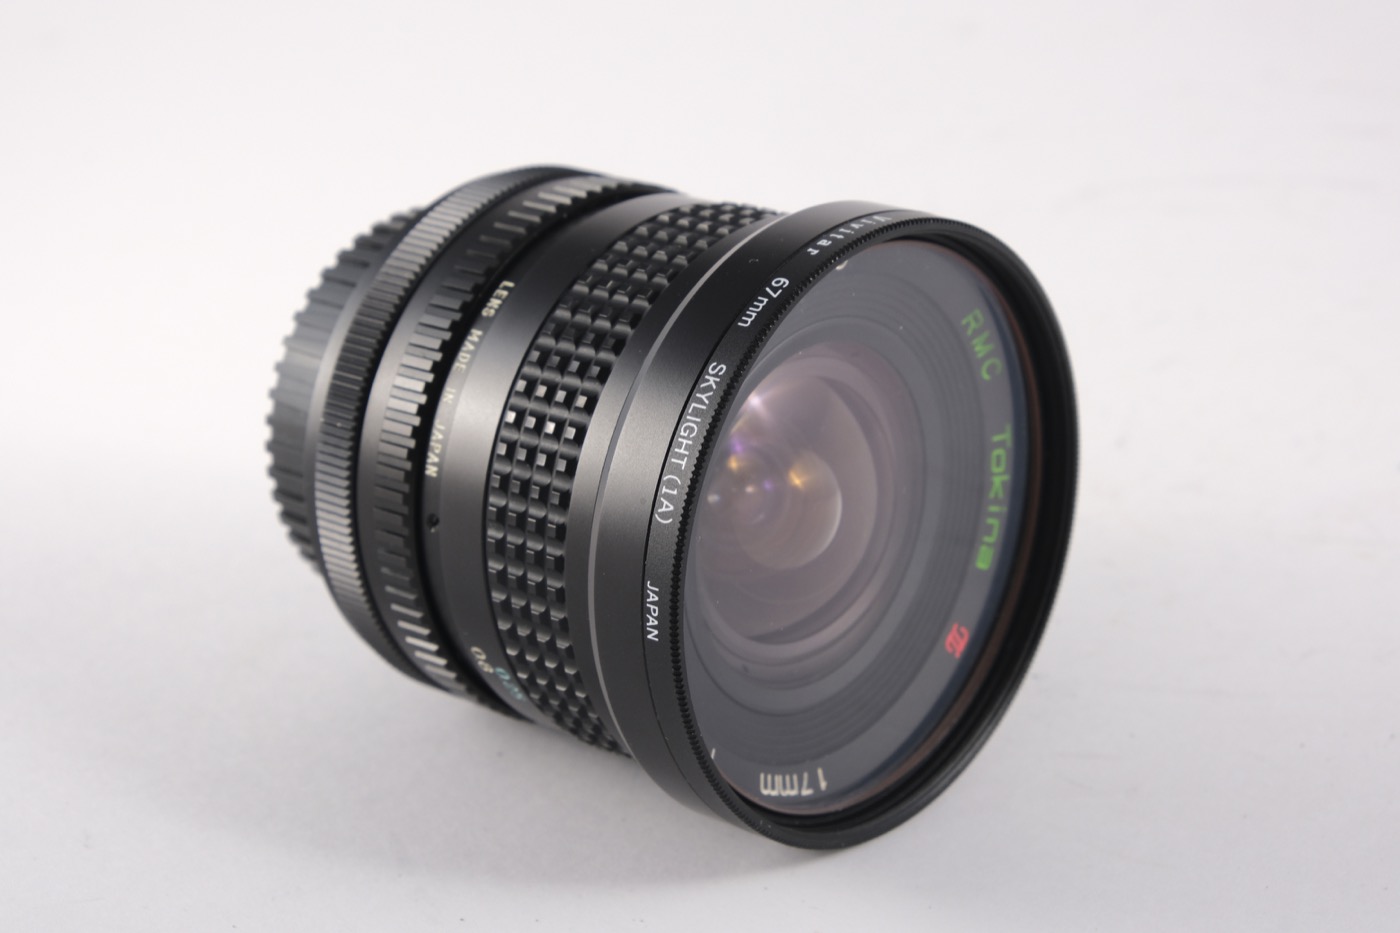 Tokina 17mm f/3.5 lens